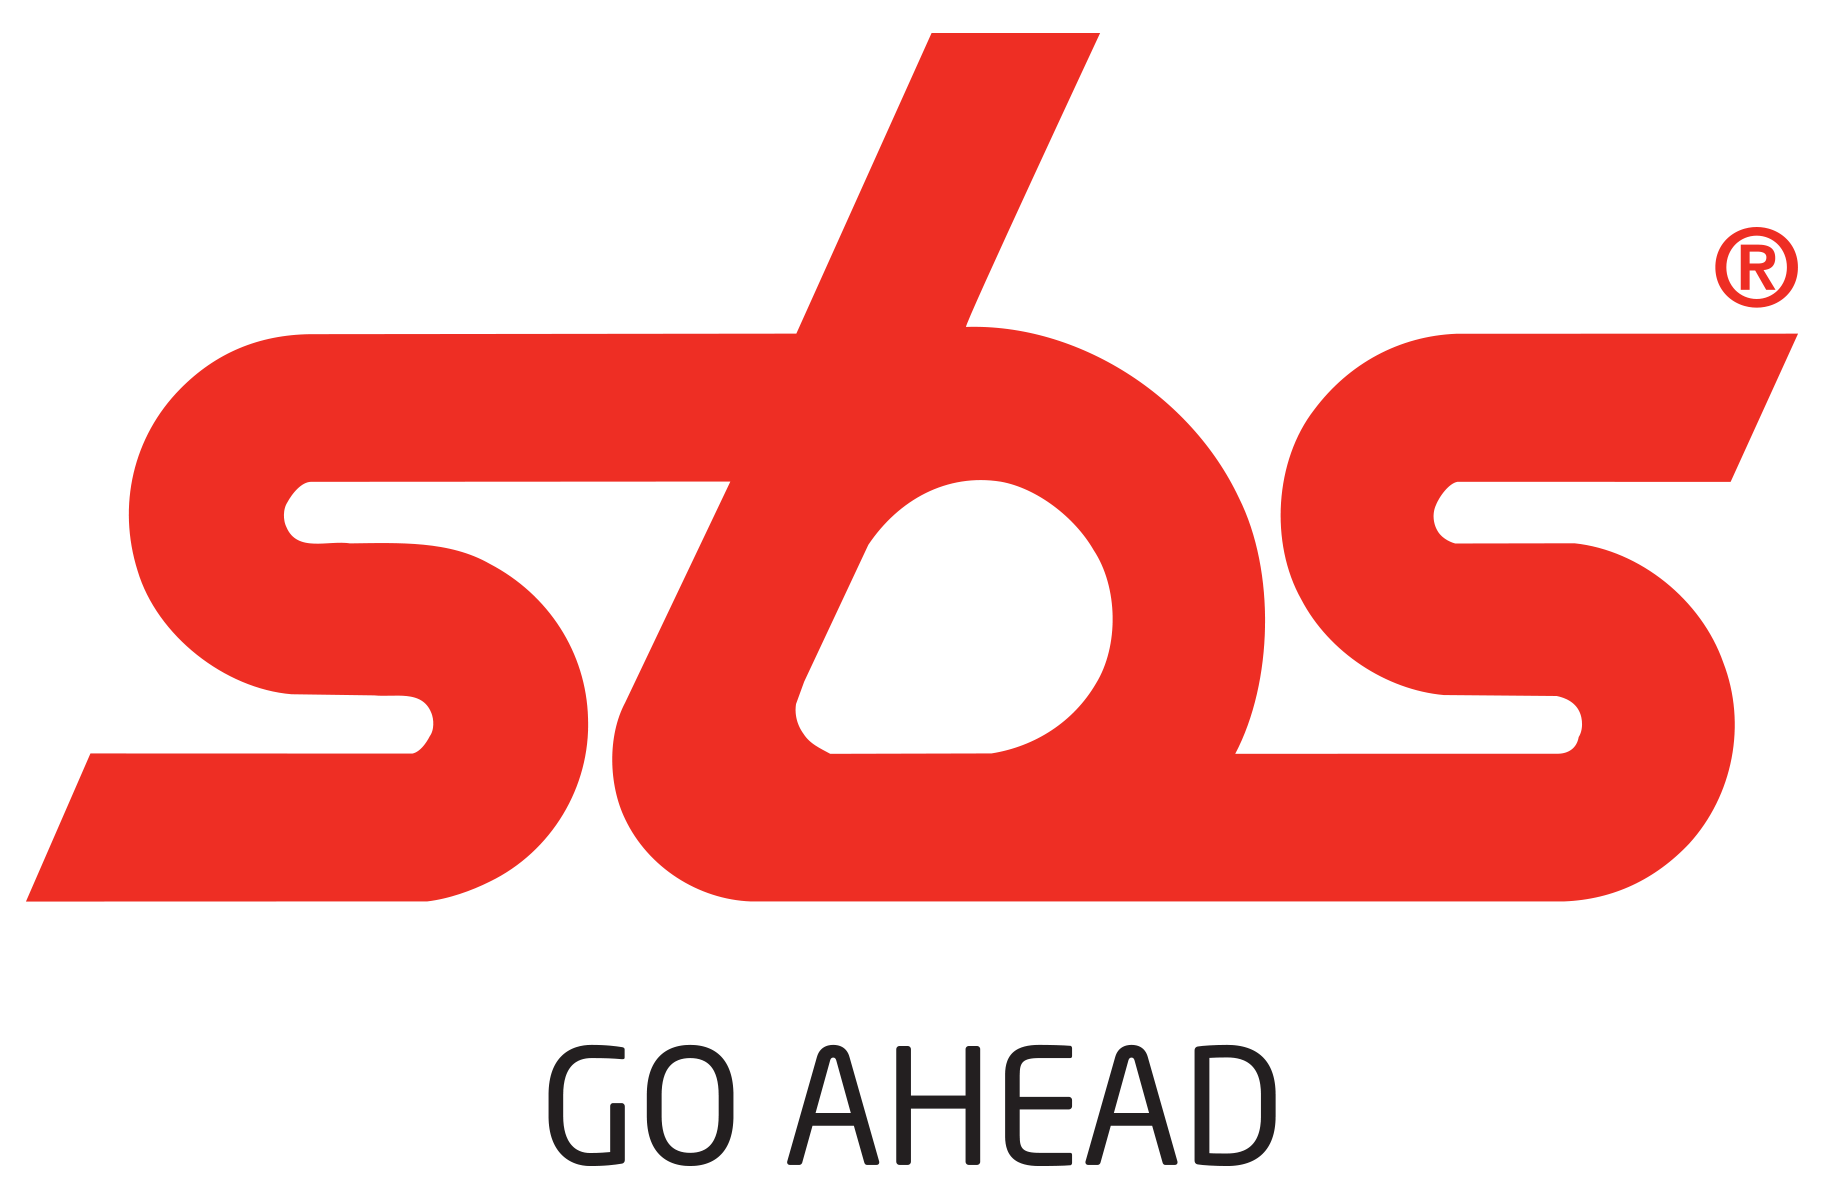 SBS GO AHEAD